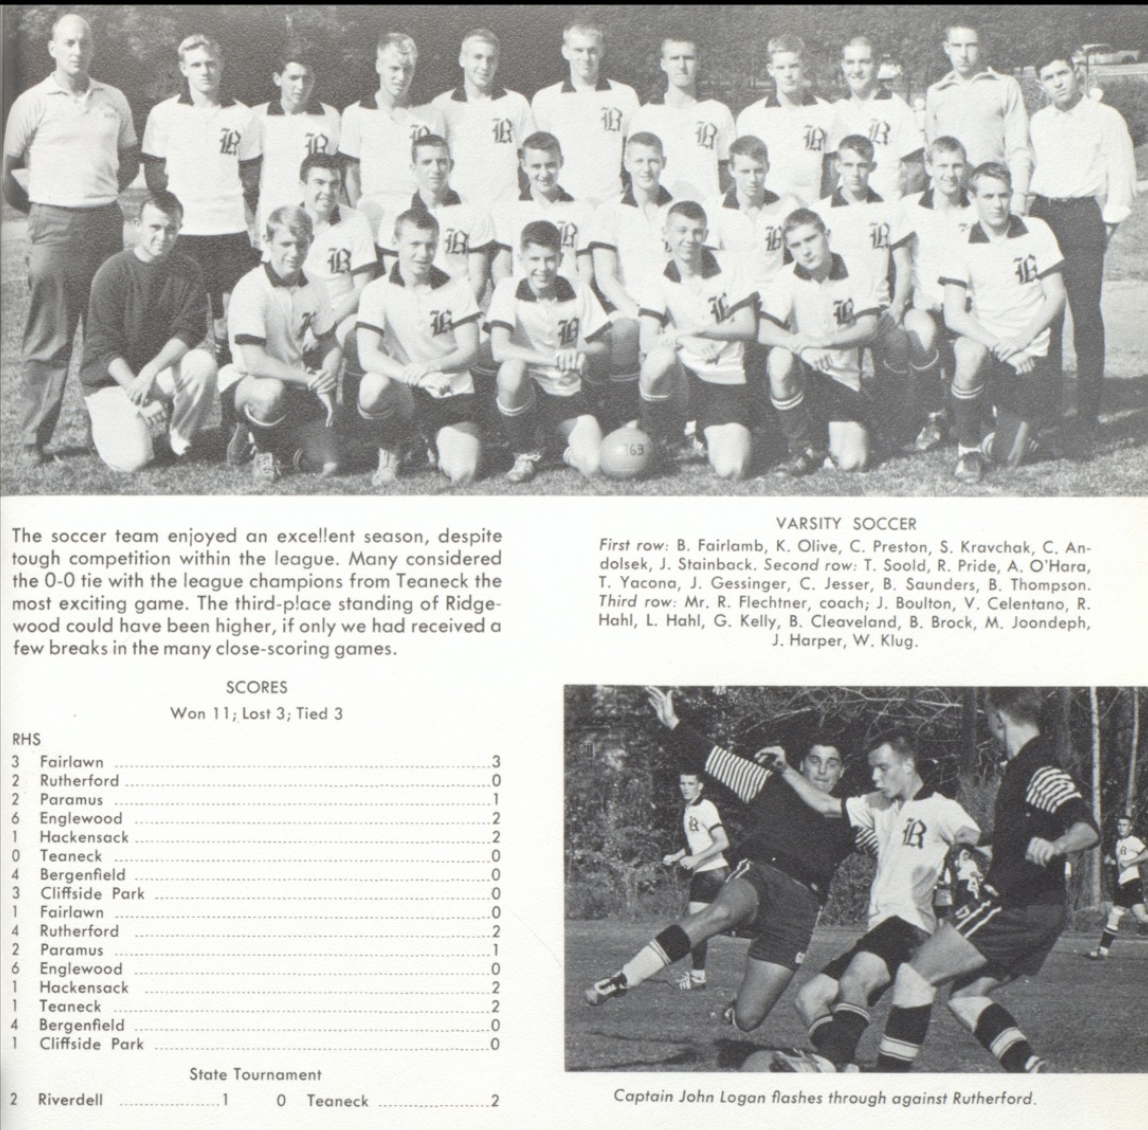 1963 Boys’ Soccer Team